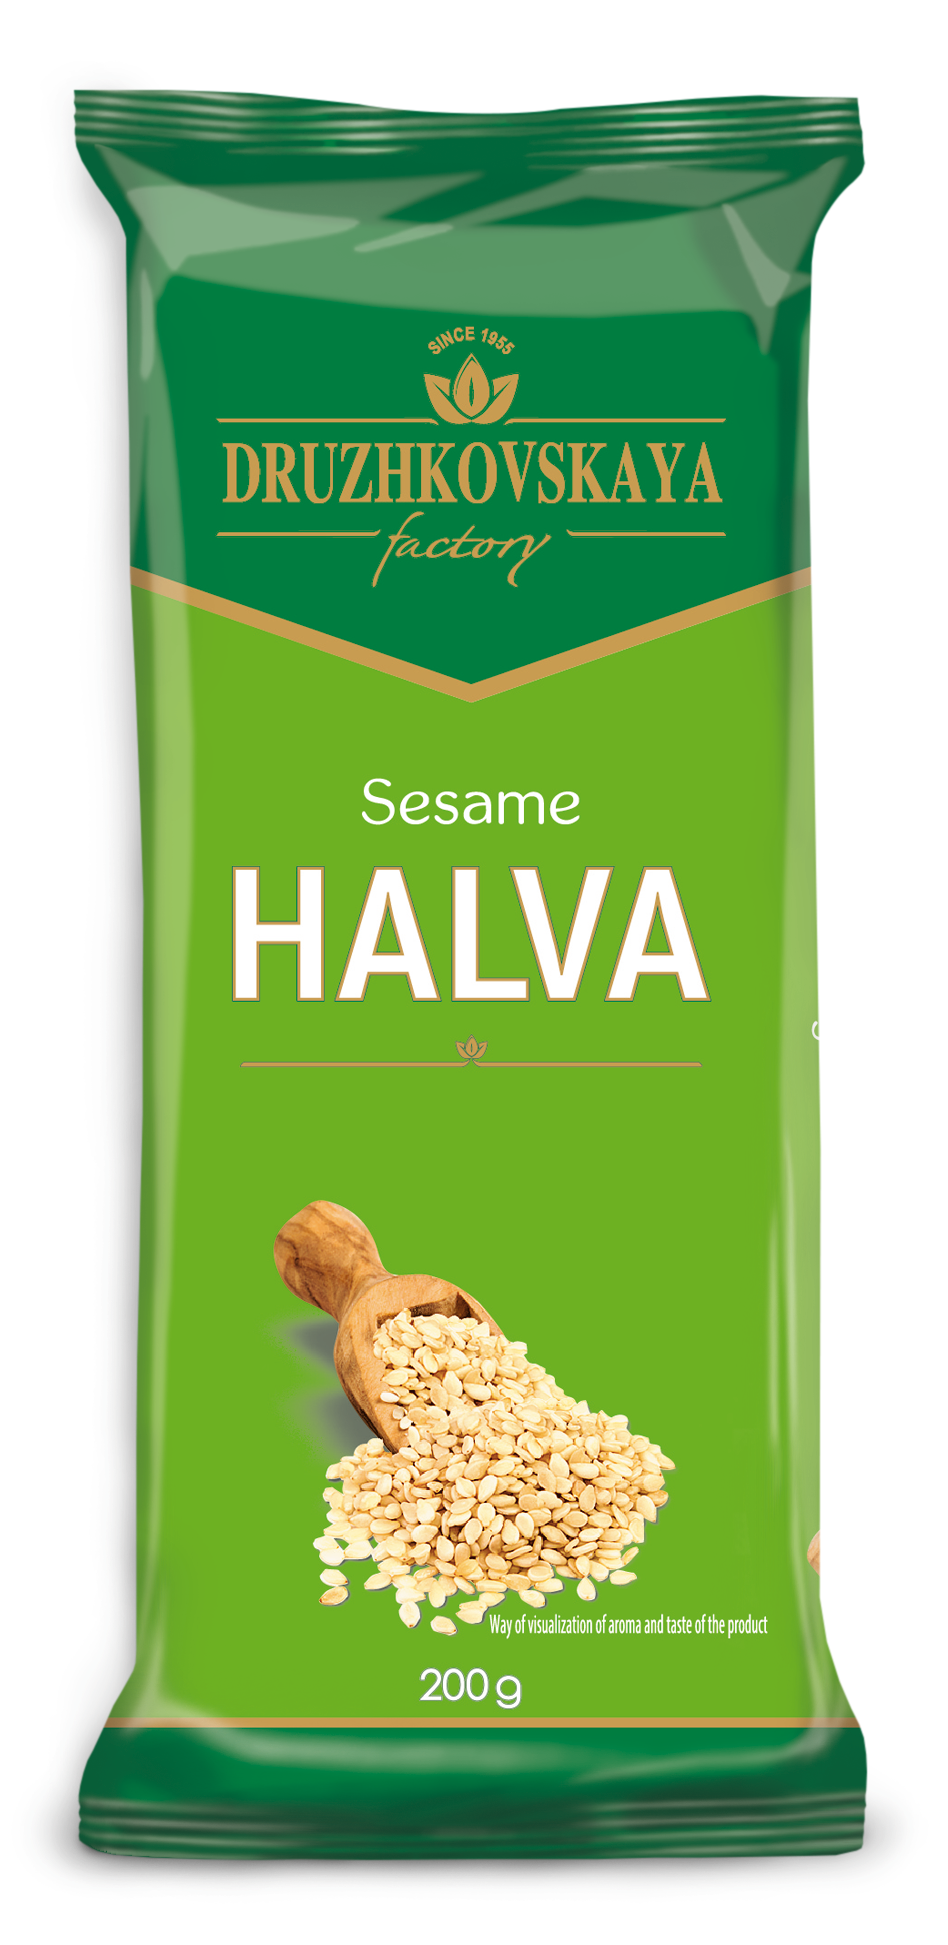 Tahini Halva (from sesame seeds) Packed in Flow-pack, 350 g